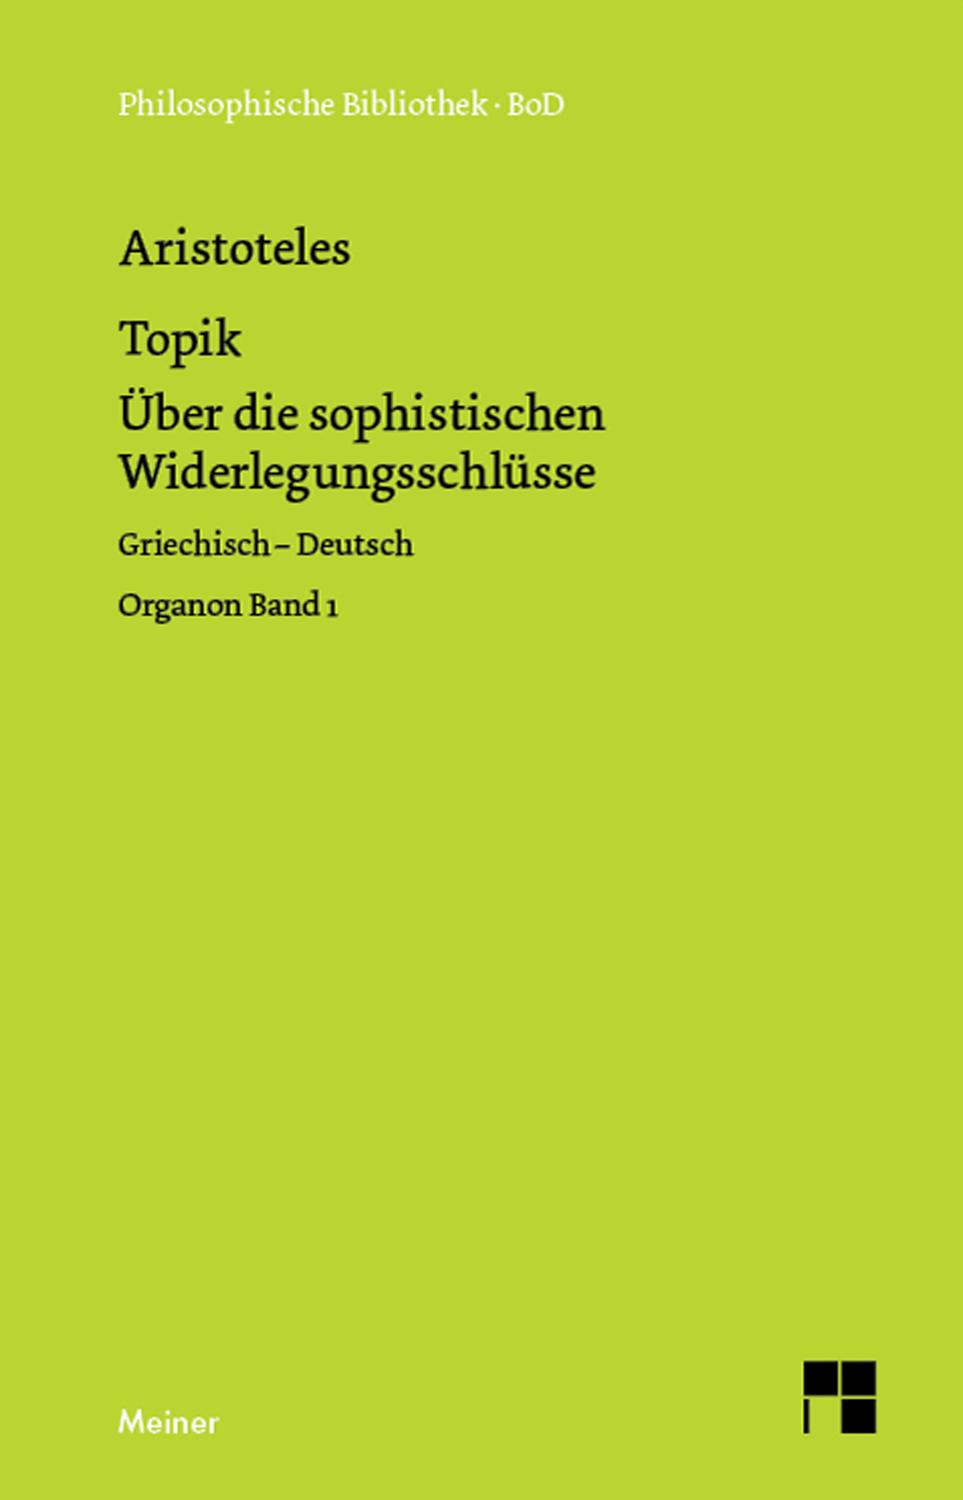 Topik, neuntes Buch oder Über die sophistischen Widerlegungsschlüsse Organon Band 1. Zweisprachige Ausgabe